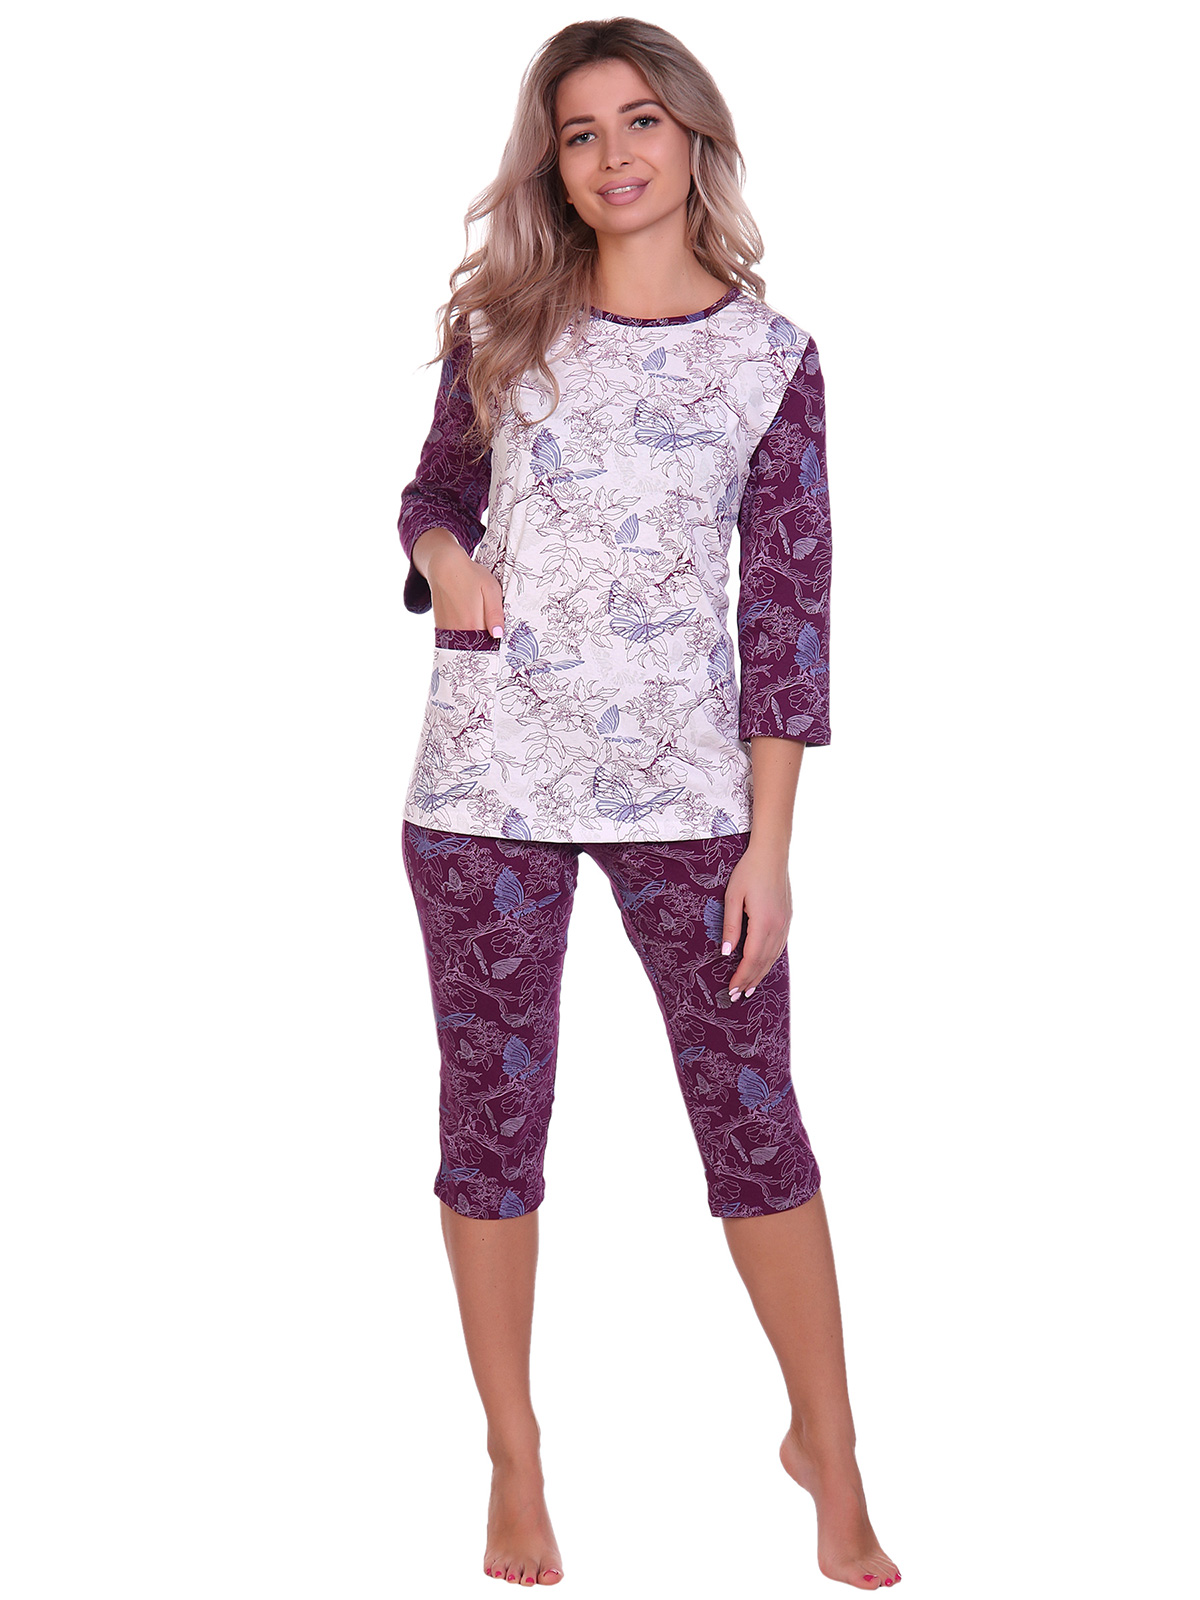 Жен. пижама арт. 16-0705 Бордовый р. 62 НСД Трикотаж, размер 62 - фото 1